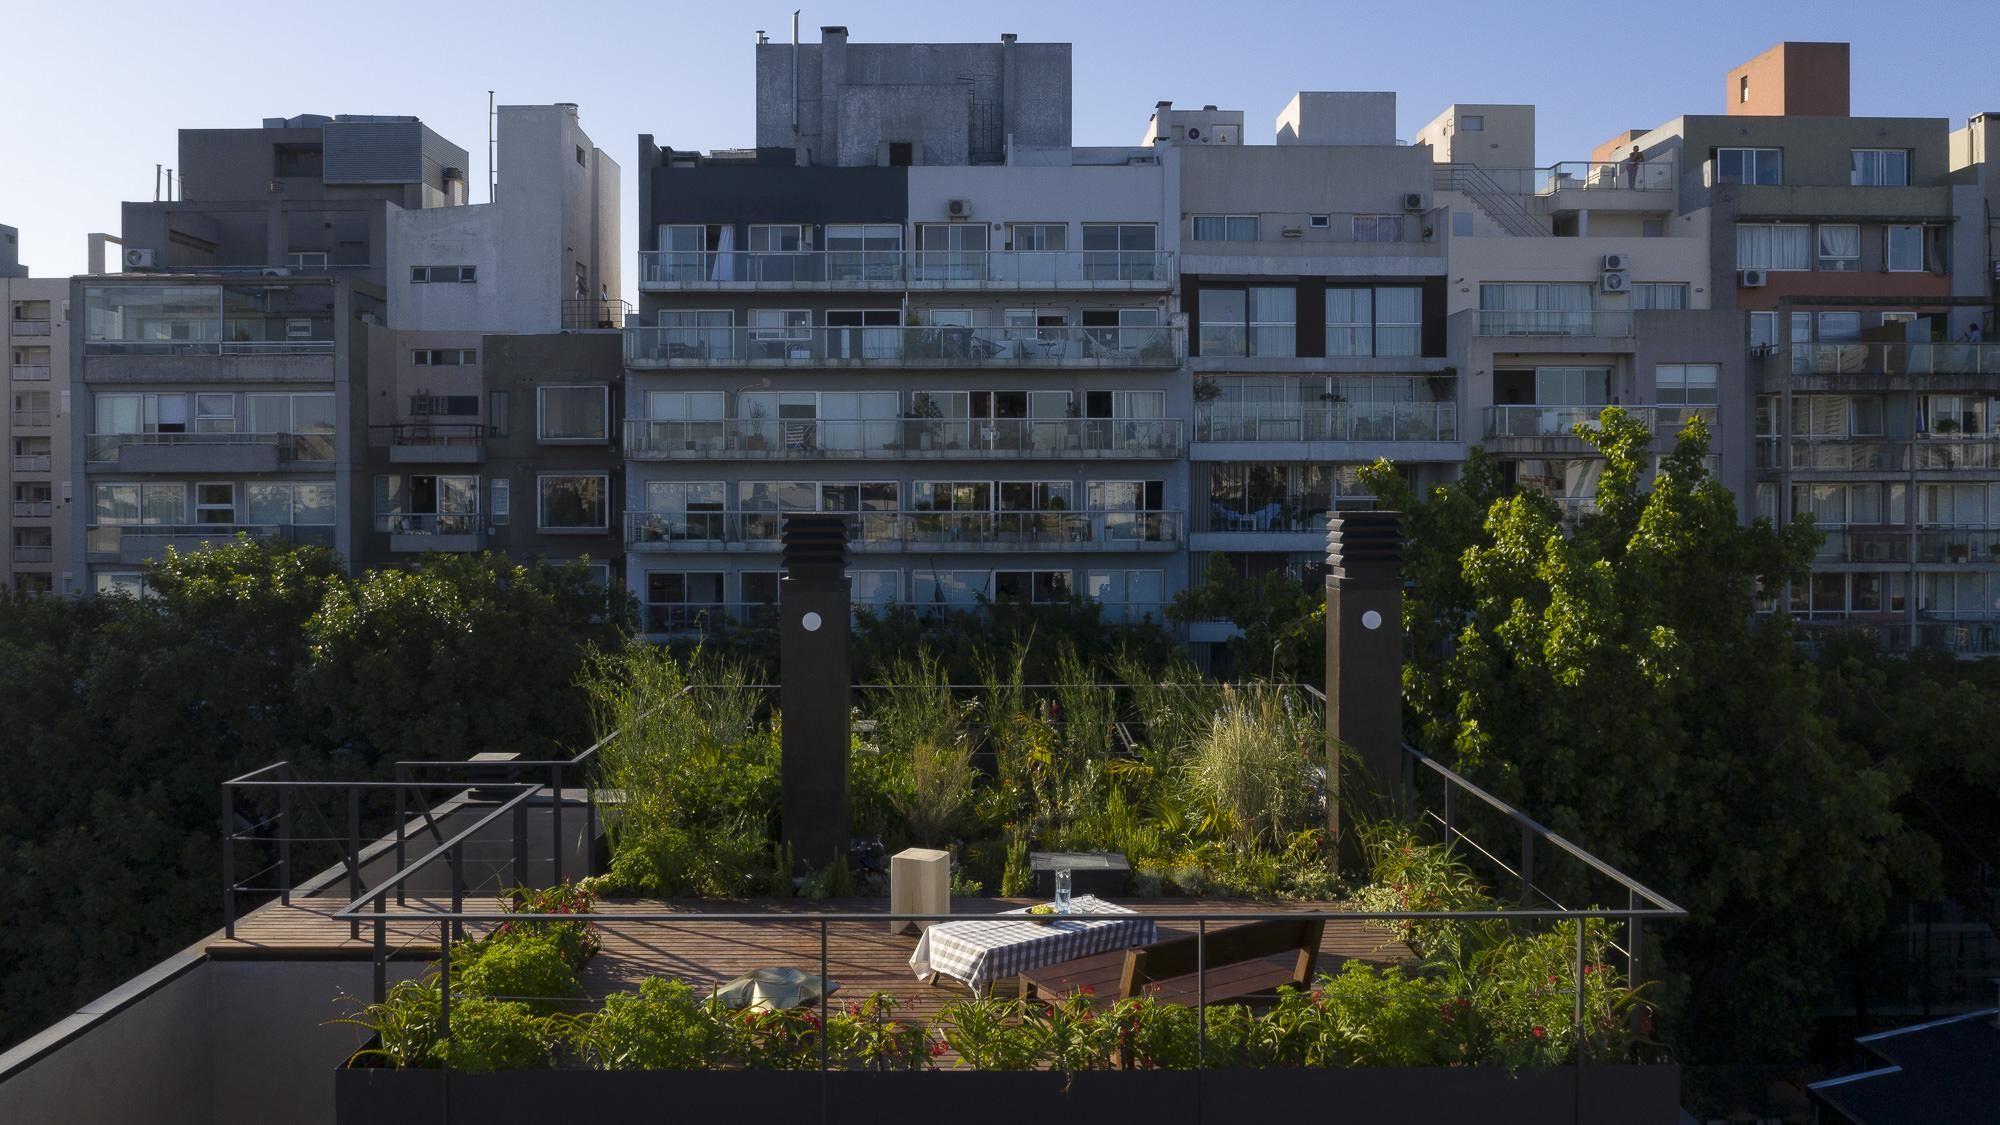 Як збільшити площу квартири у 2 рази: лаконічна прибудова на даху у Буенос-Айресі - Дизайн 24